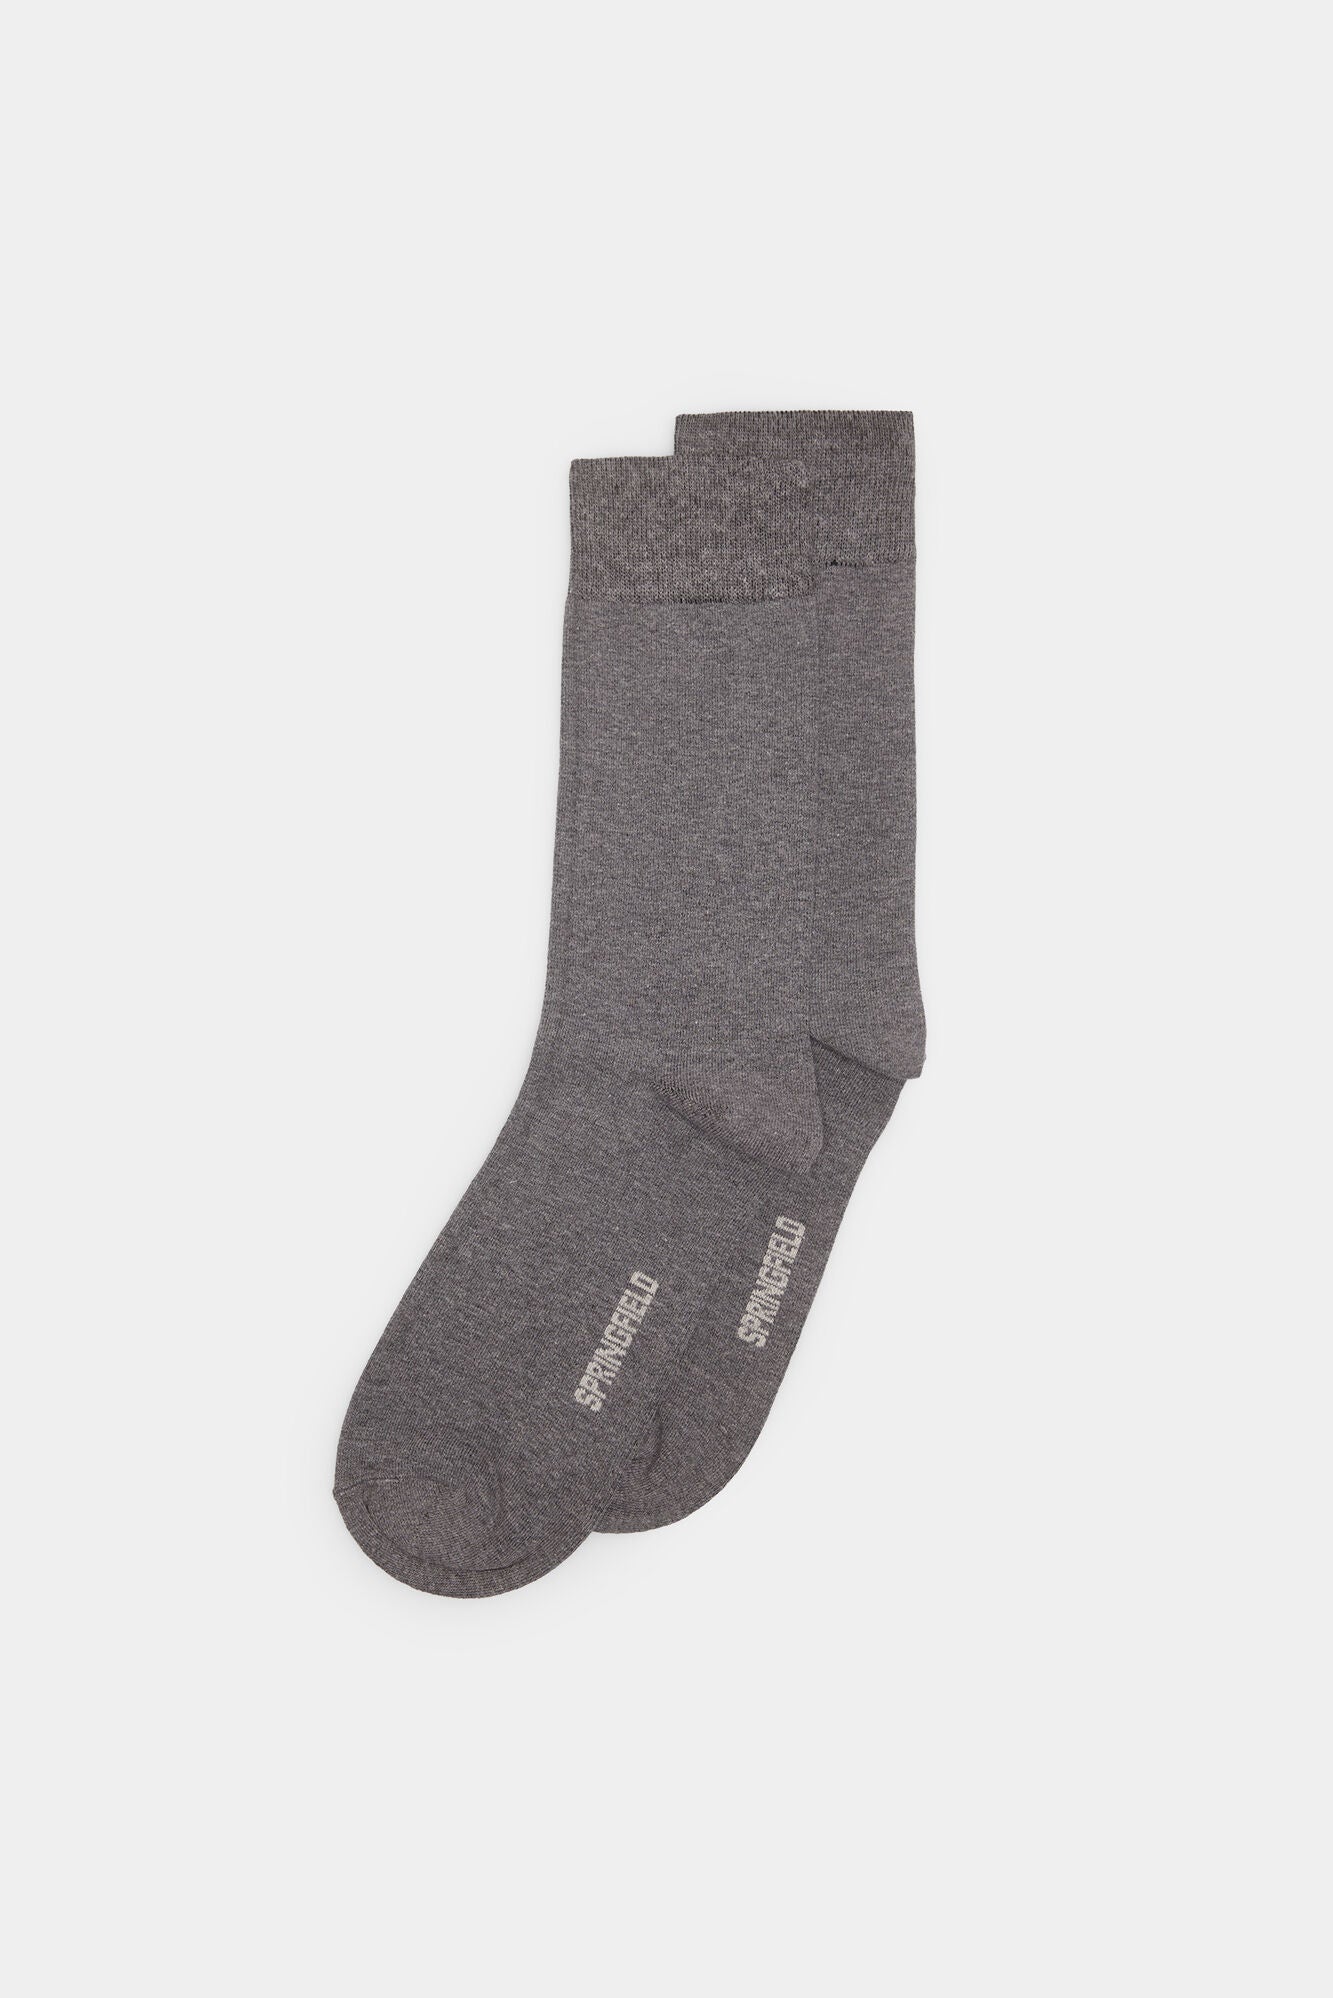 Grey Plain High Socks - 1 Pair